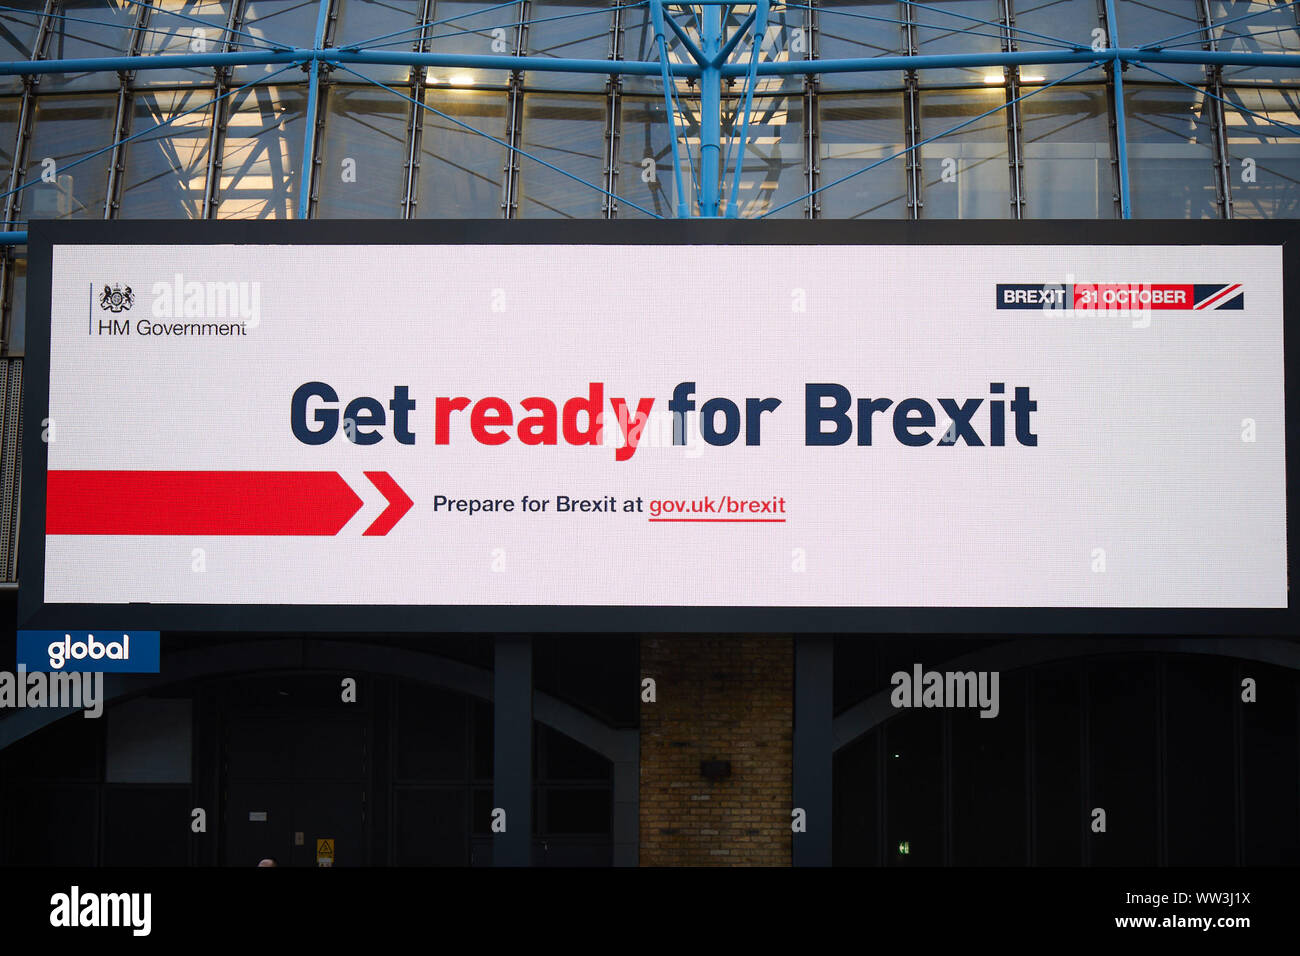 Londres, Reino Unido - 10 de septiembre de 2019: un anuncio iluminado en Waterloo como parte de la nueva campaña del gobierno llamando a la gente a prepararse para Brexit. Foto de stock